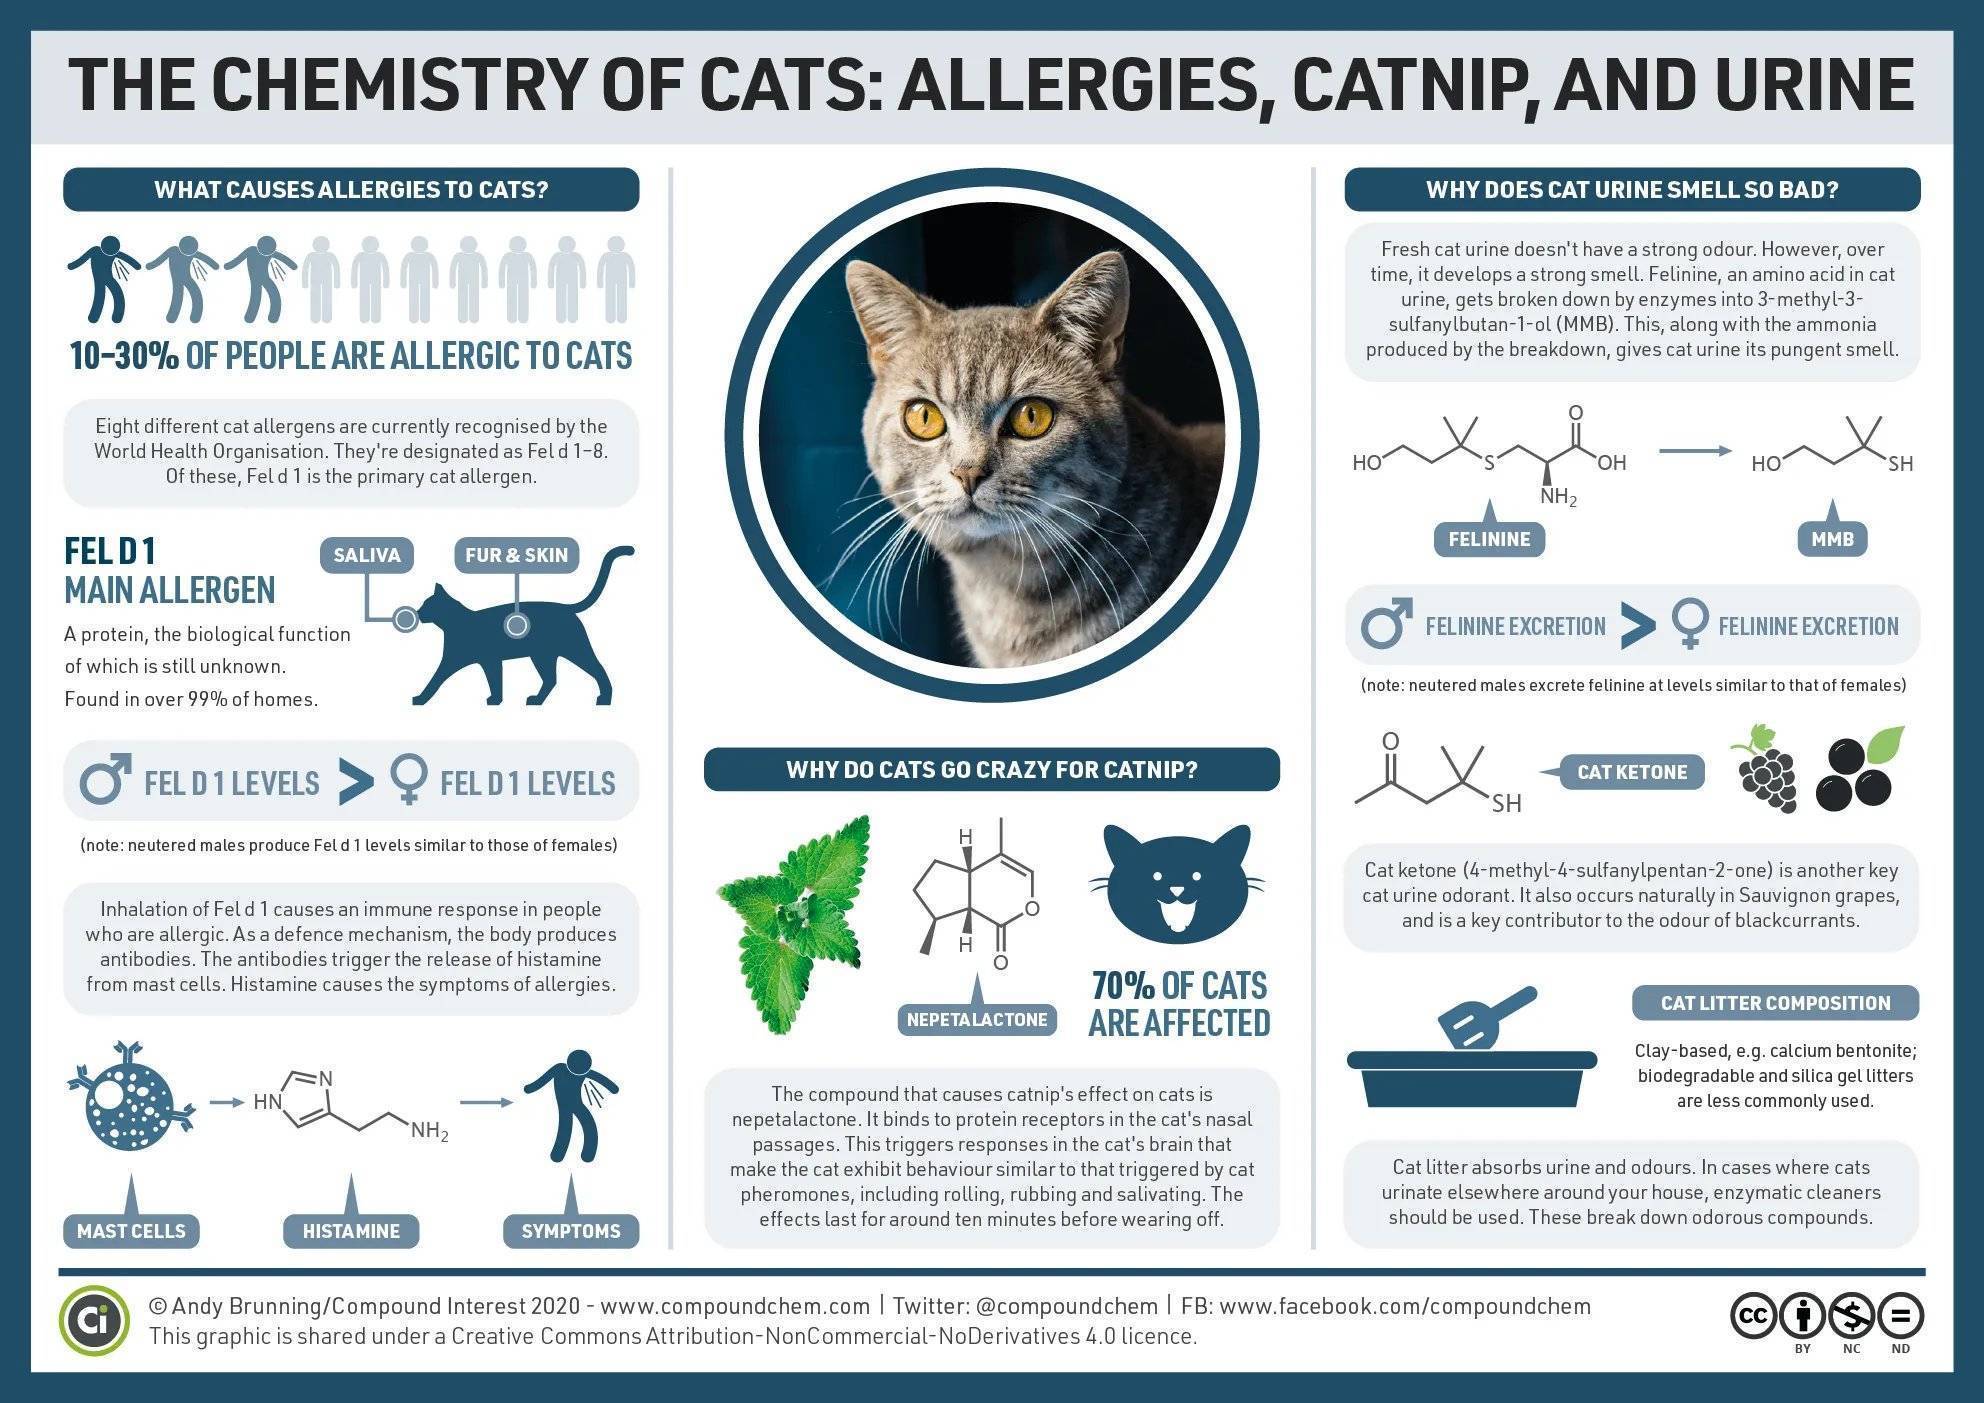 Аллергия у кошек на корм и другие раздражители: симптомы и лечение, особенности протекания заболевания у котенка